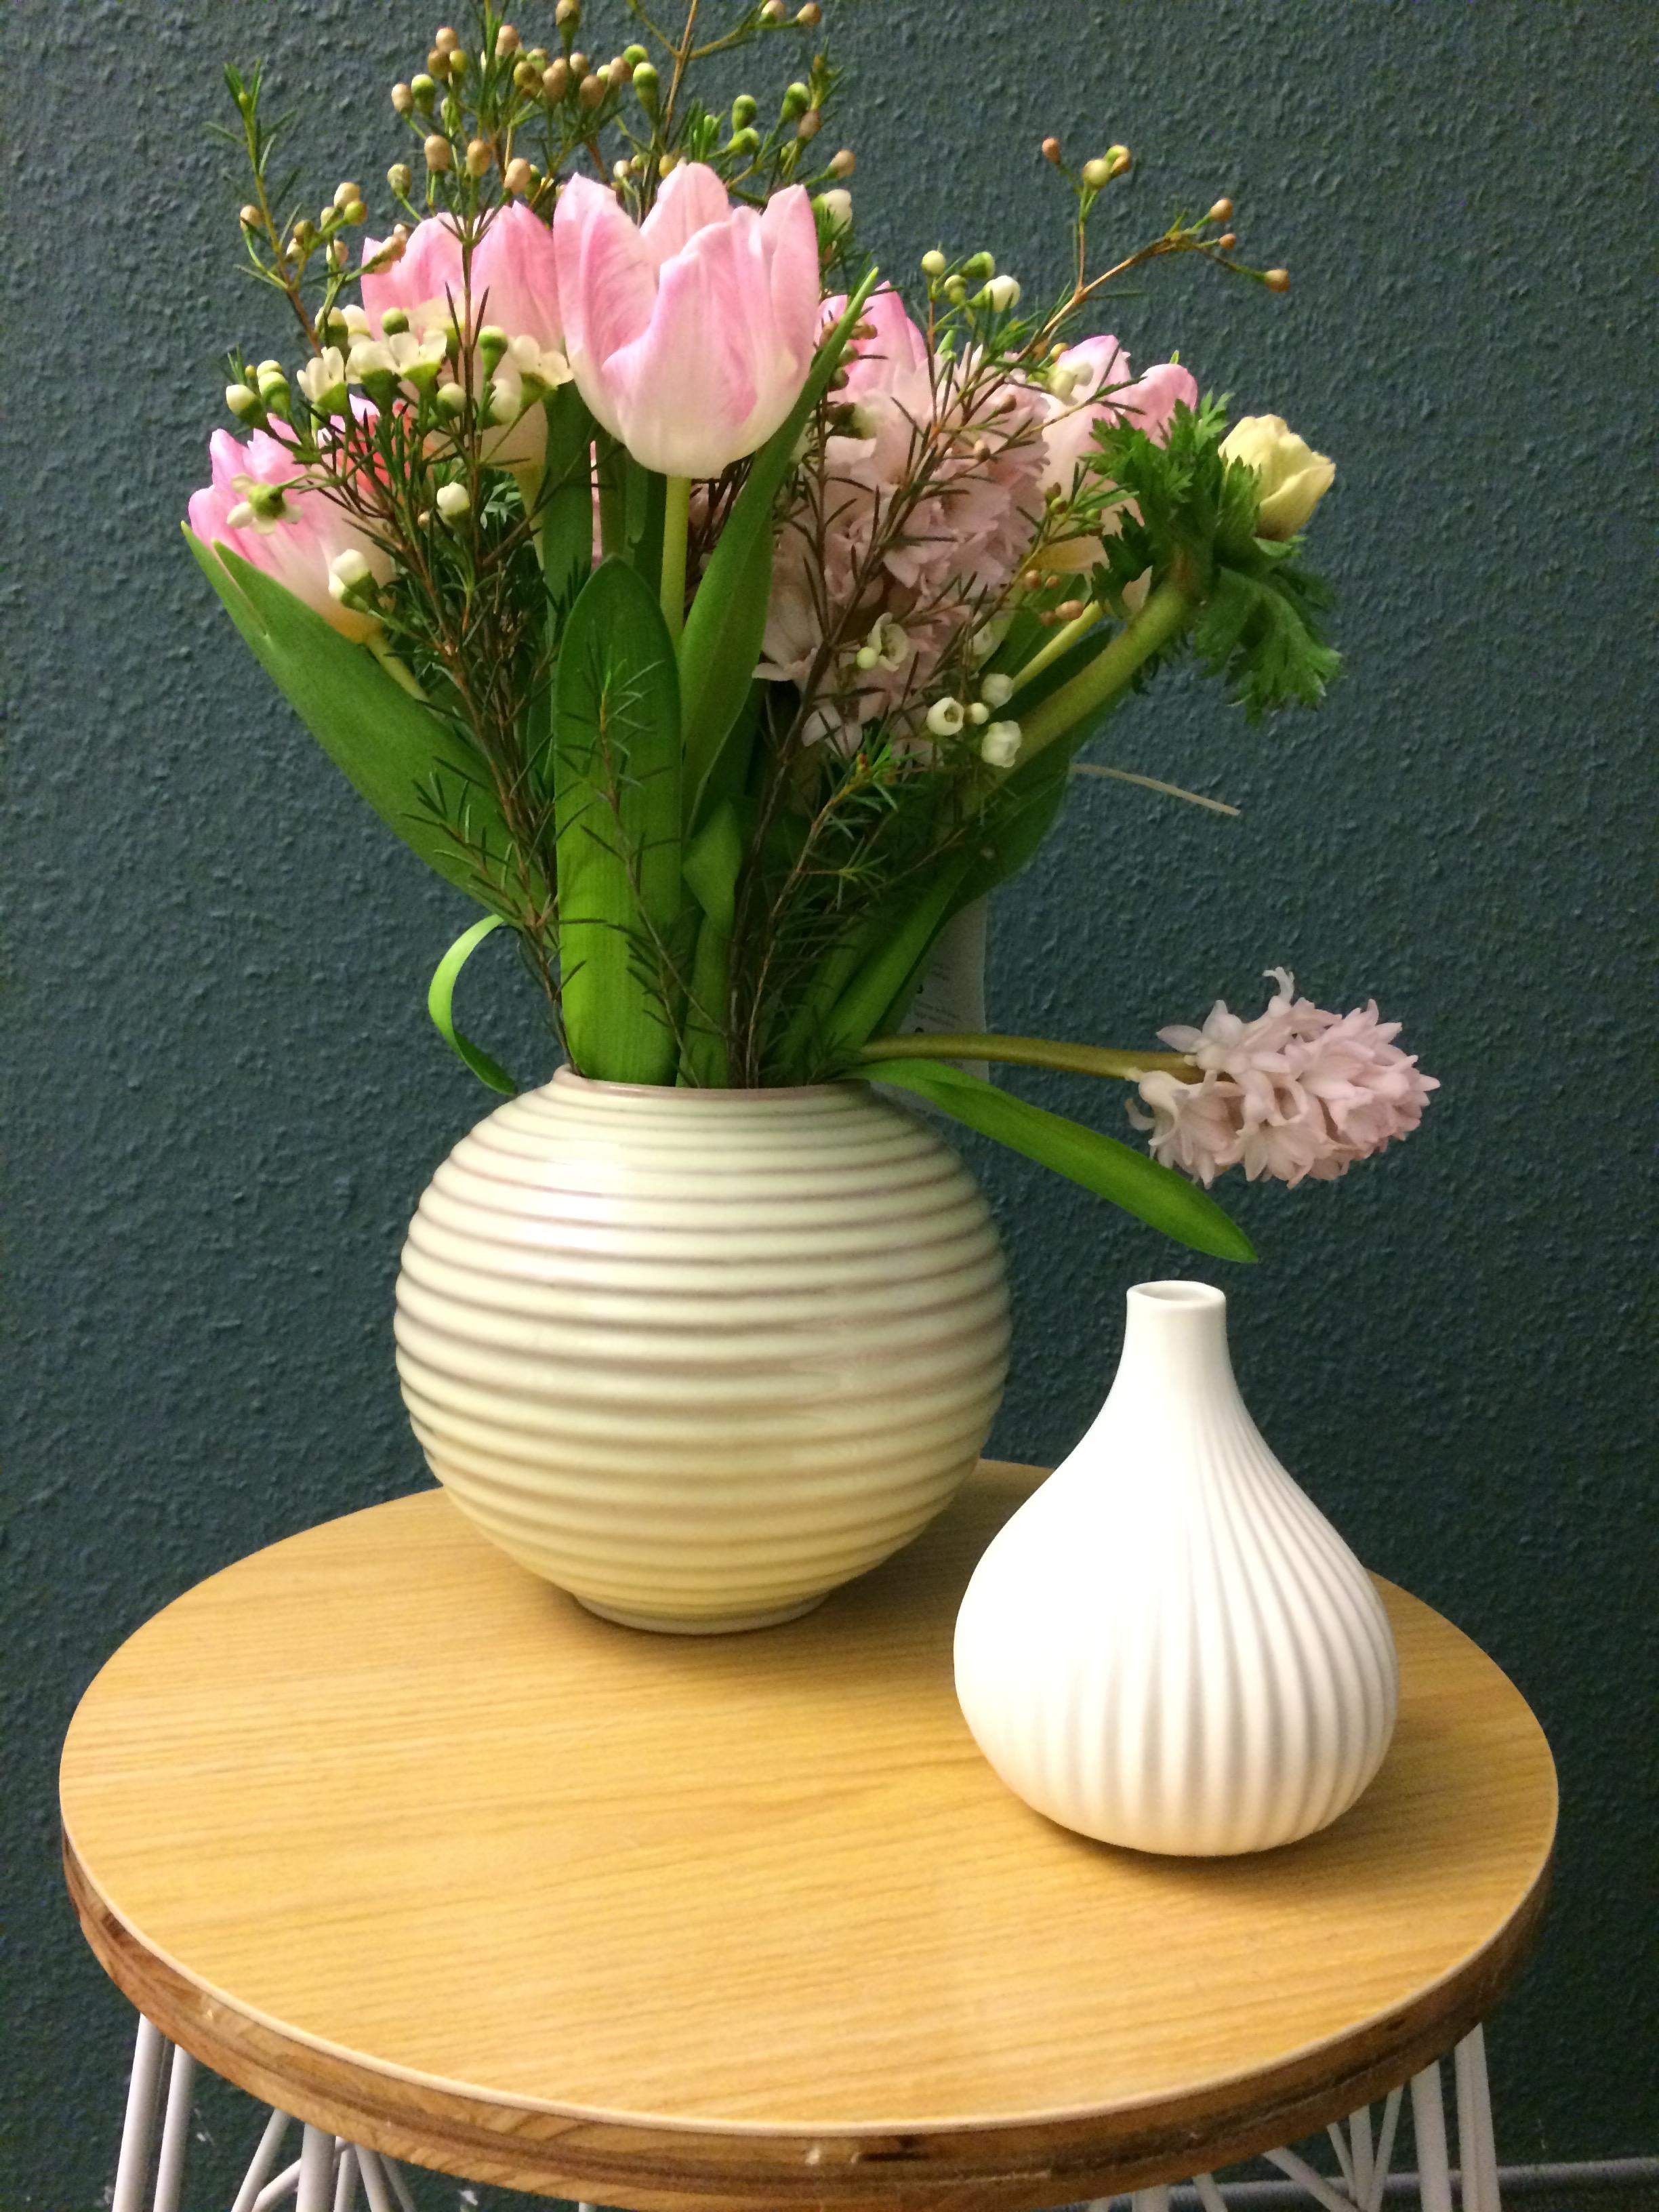 Blumen am Montag - kann es einen besseren Start in die Woche geben? #blumen #vase #wandfarbe #beistelltisch